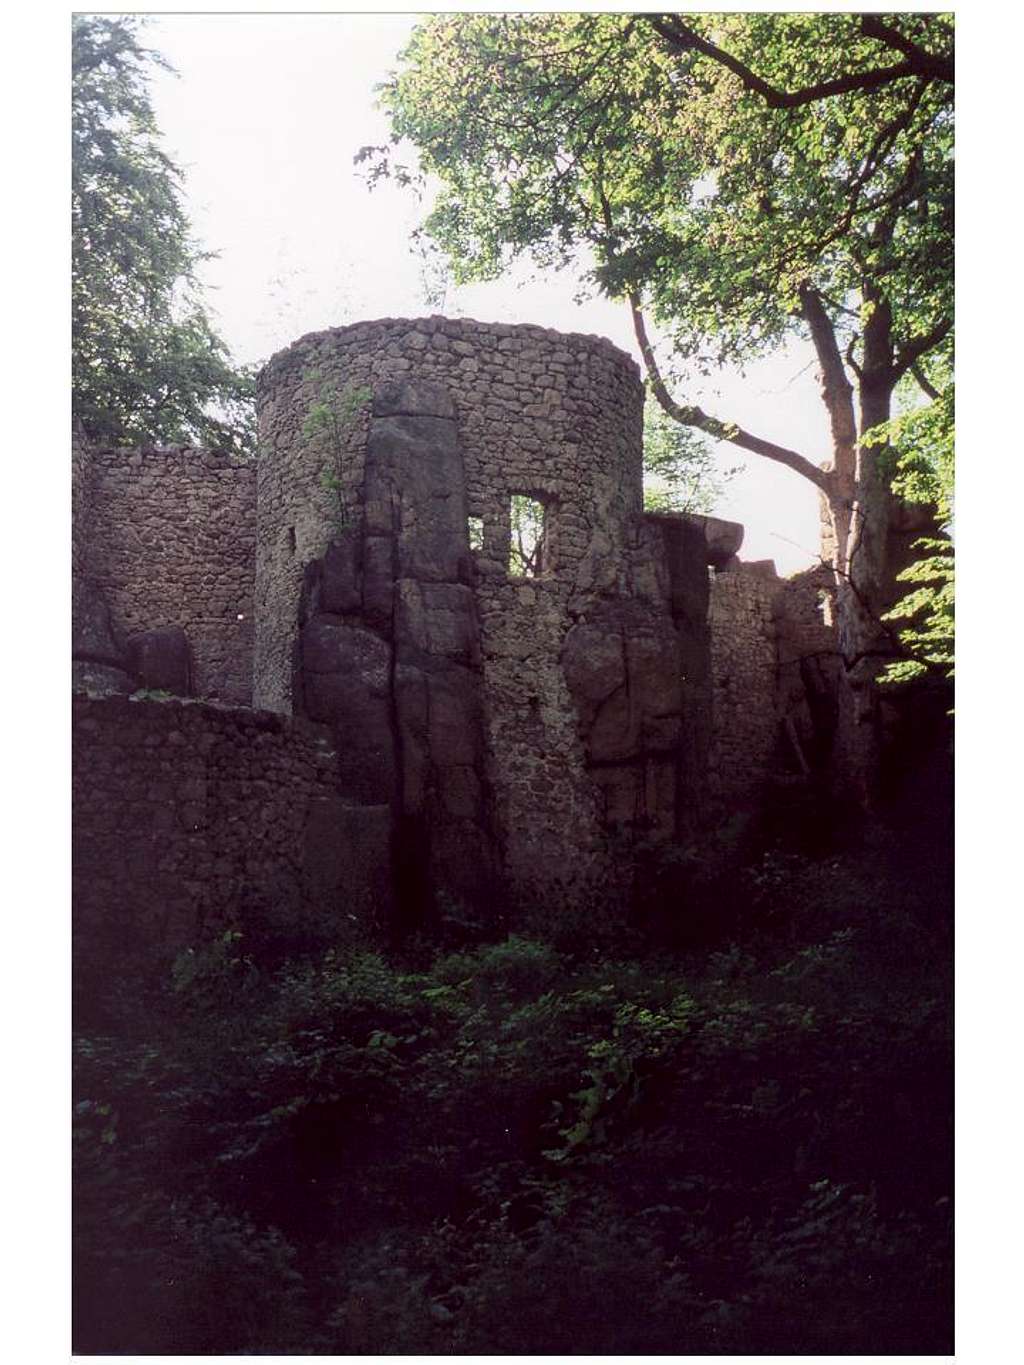 The Bolczow castle...